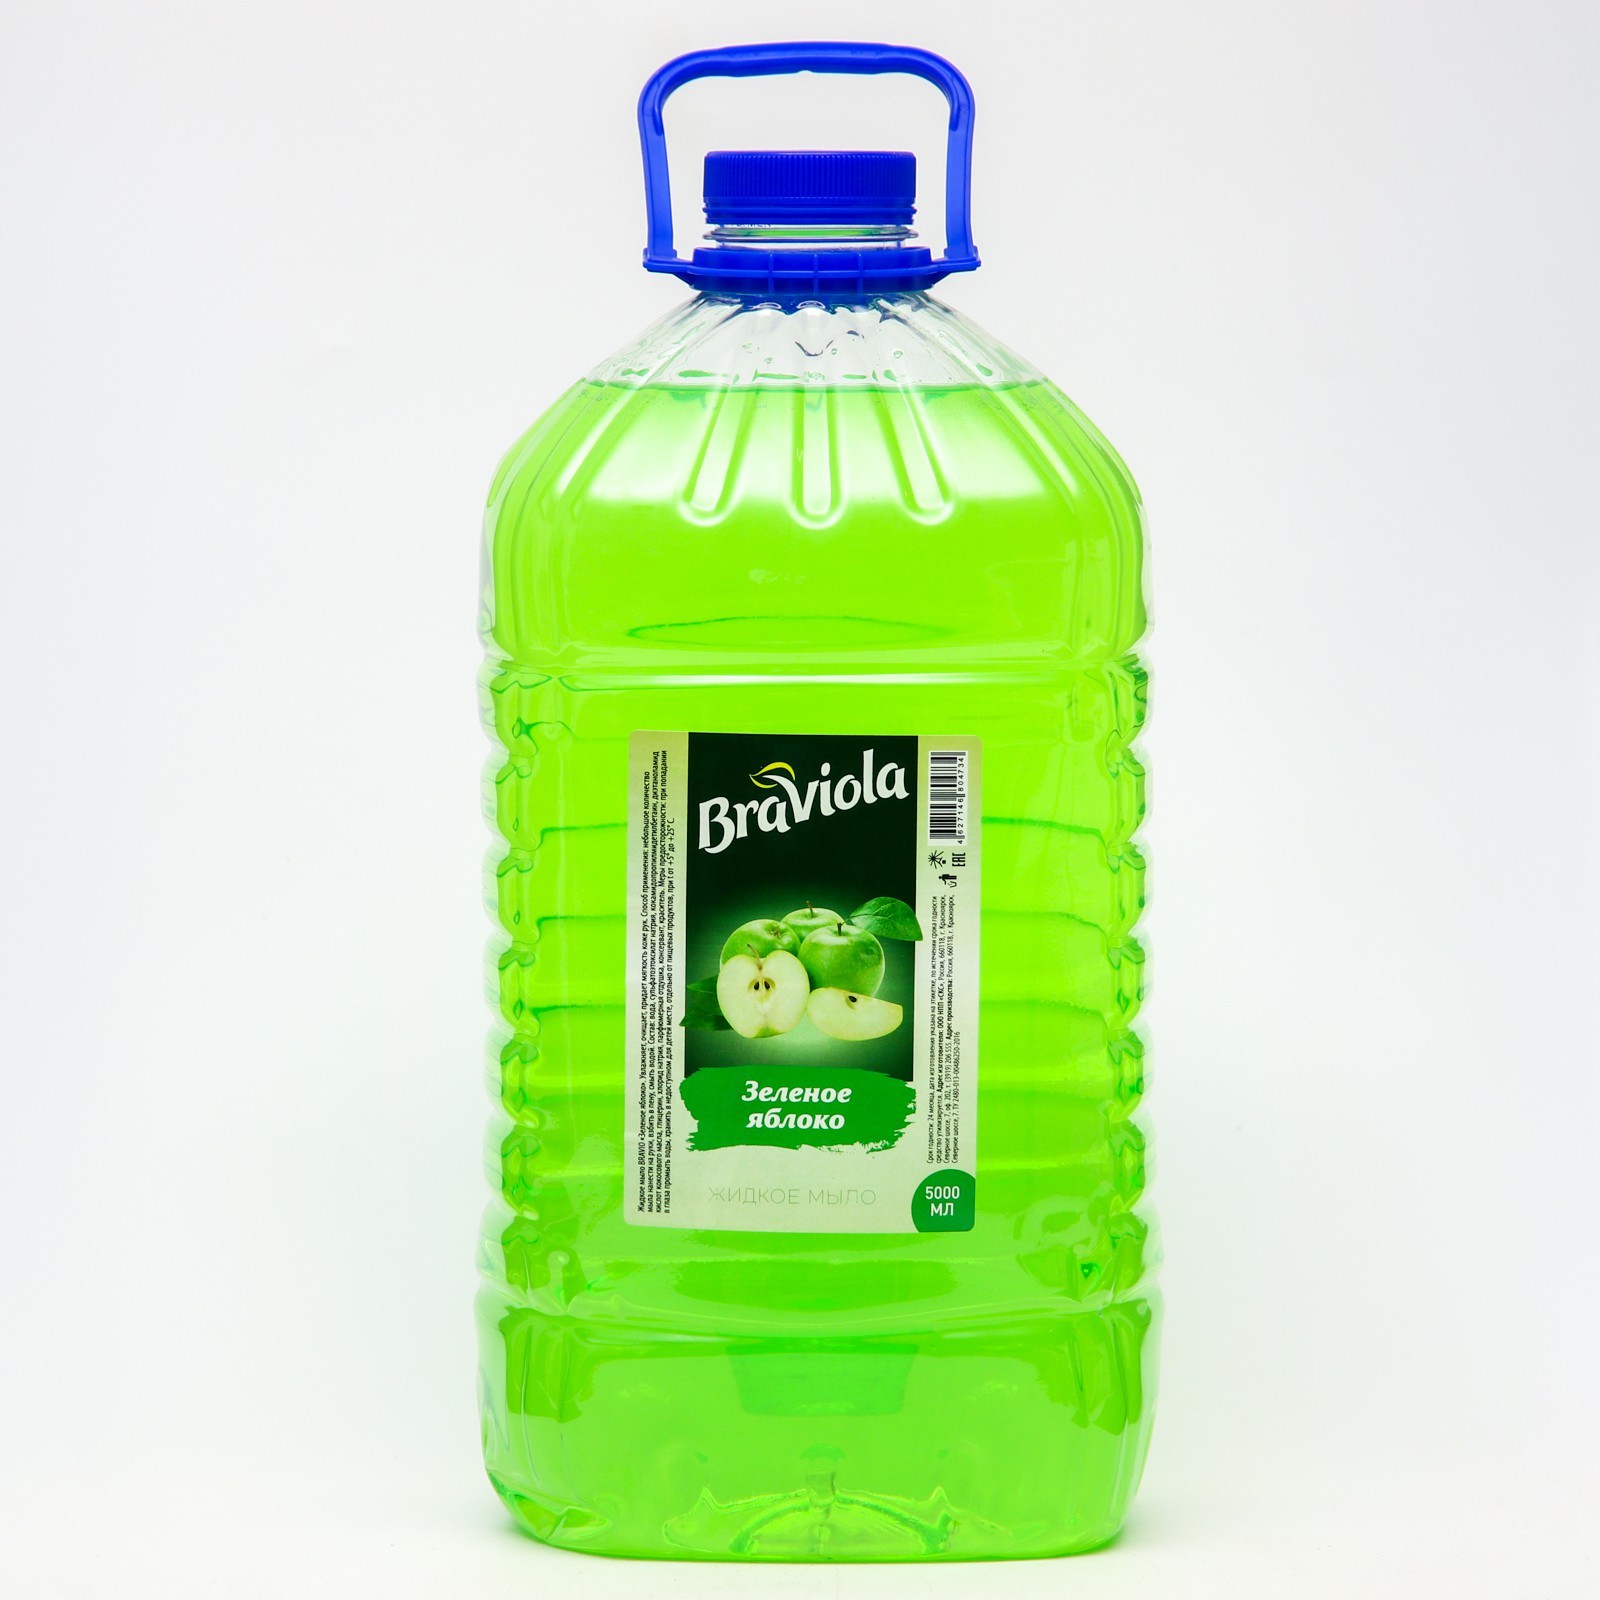 Мыло жидкое Braviola Зеленое яблоко 5 л 1шт мыло жидкое 5 л мелодия зеленое яблоко с глицерином пэт 604788